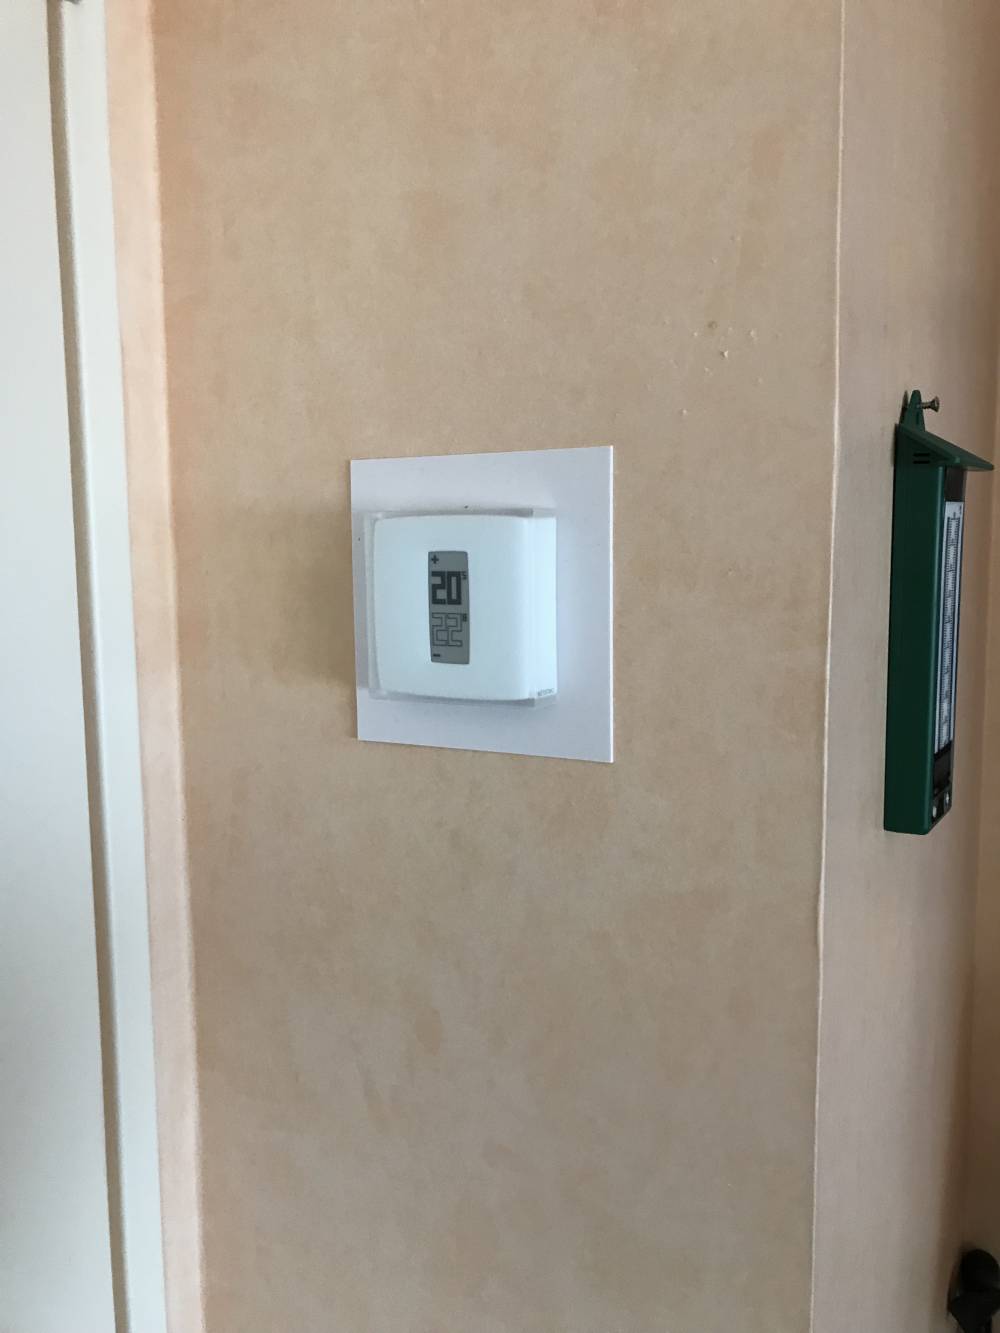 Confortek - Thermostat connecté Netatmo à Vannes